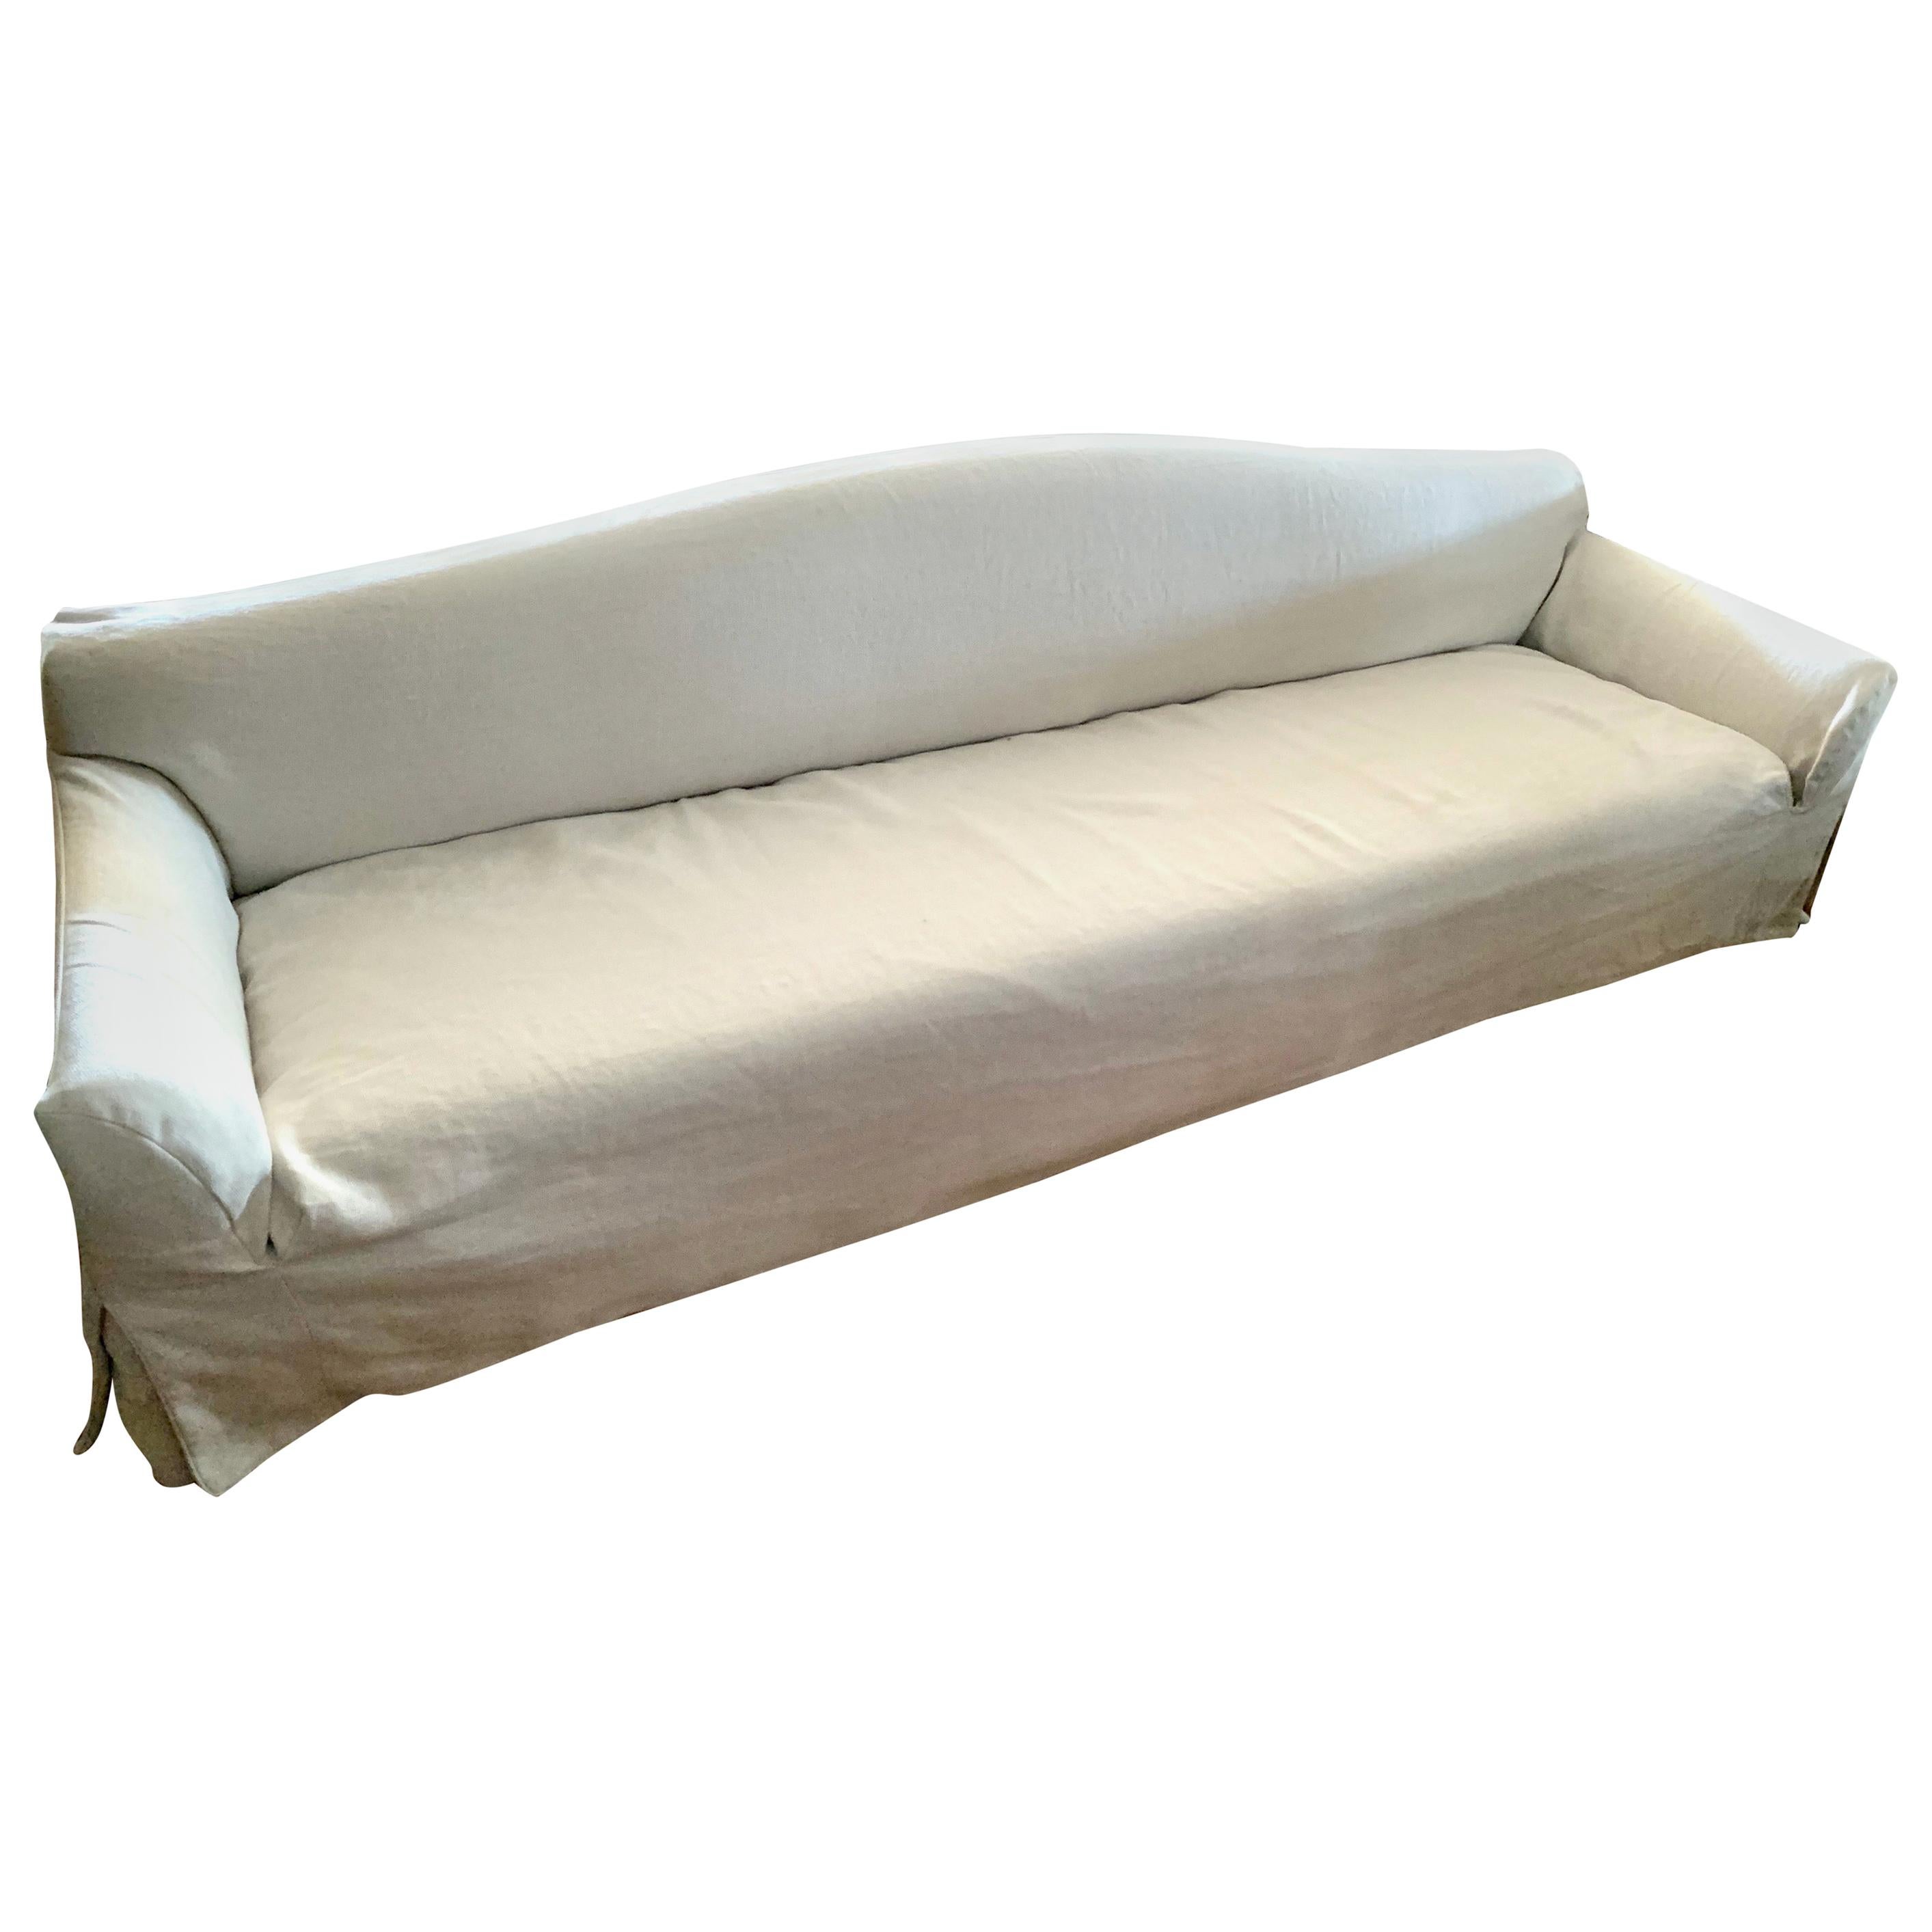 Christian Liaigre Basse Terra Linen Slipcovered Sofa for Holly Hunt Number 2